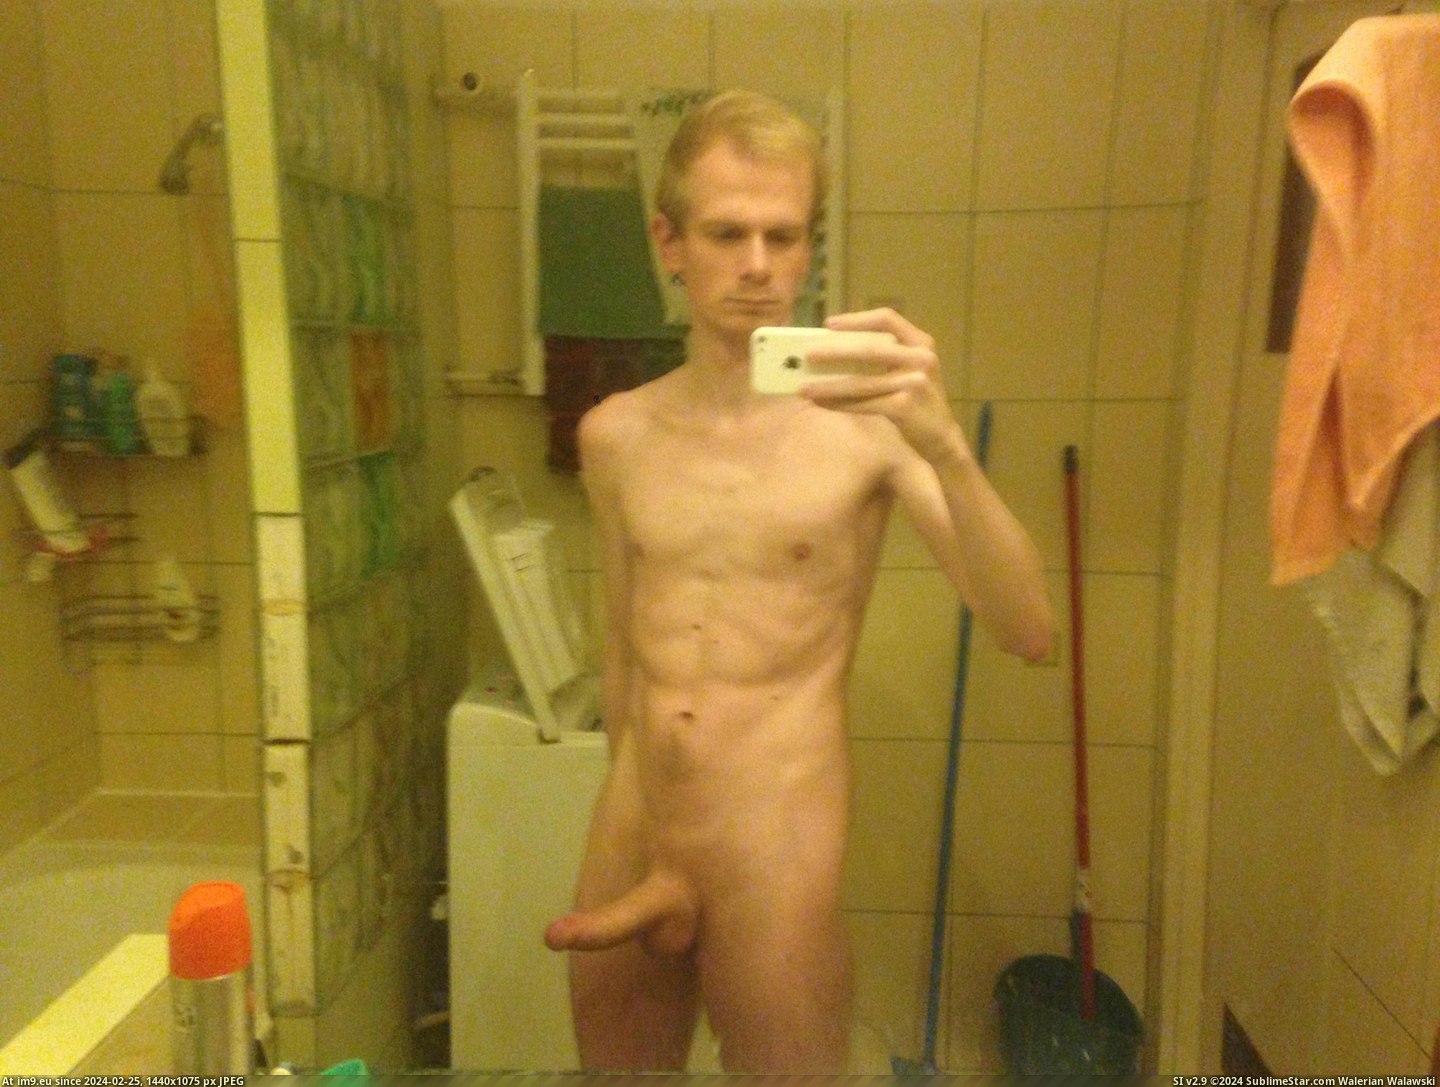 #Nude #Dick #Boner #Male #Penis IMG_0692[1] Pic. (Image of album ))